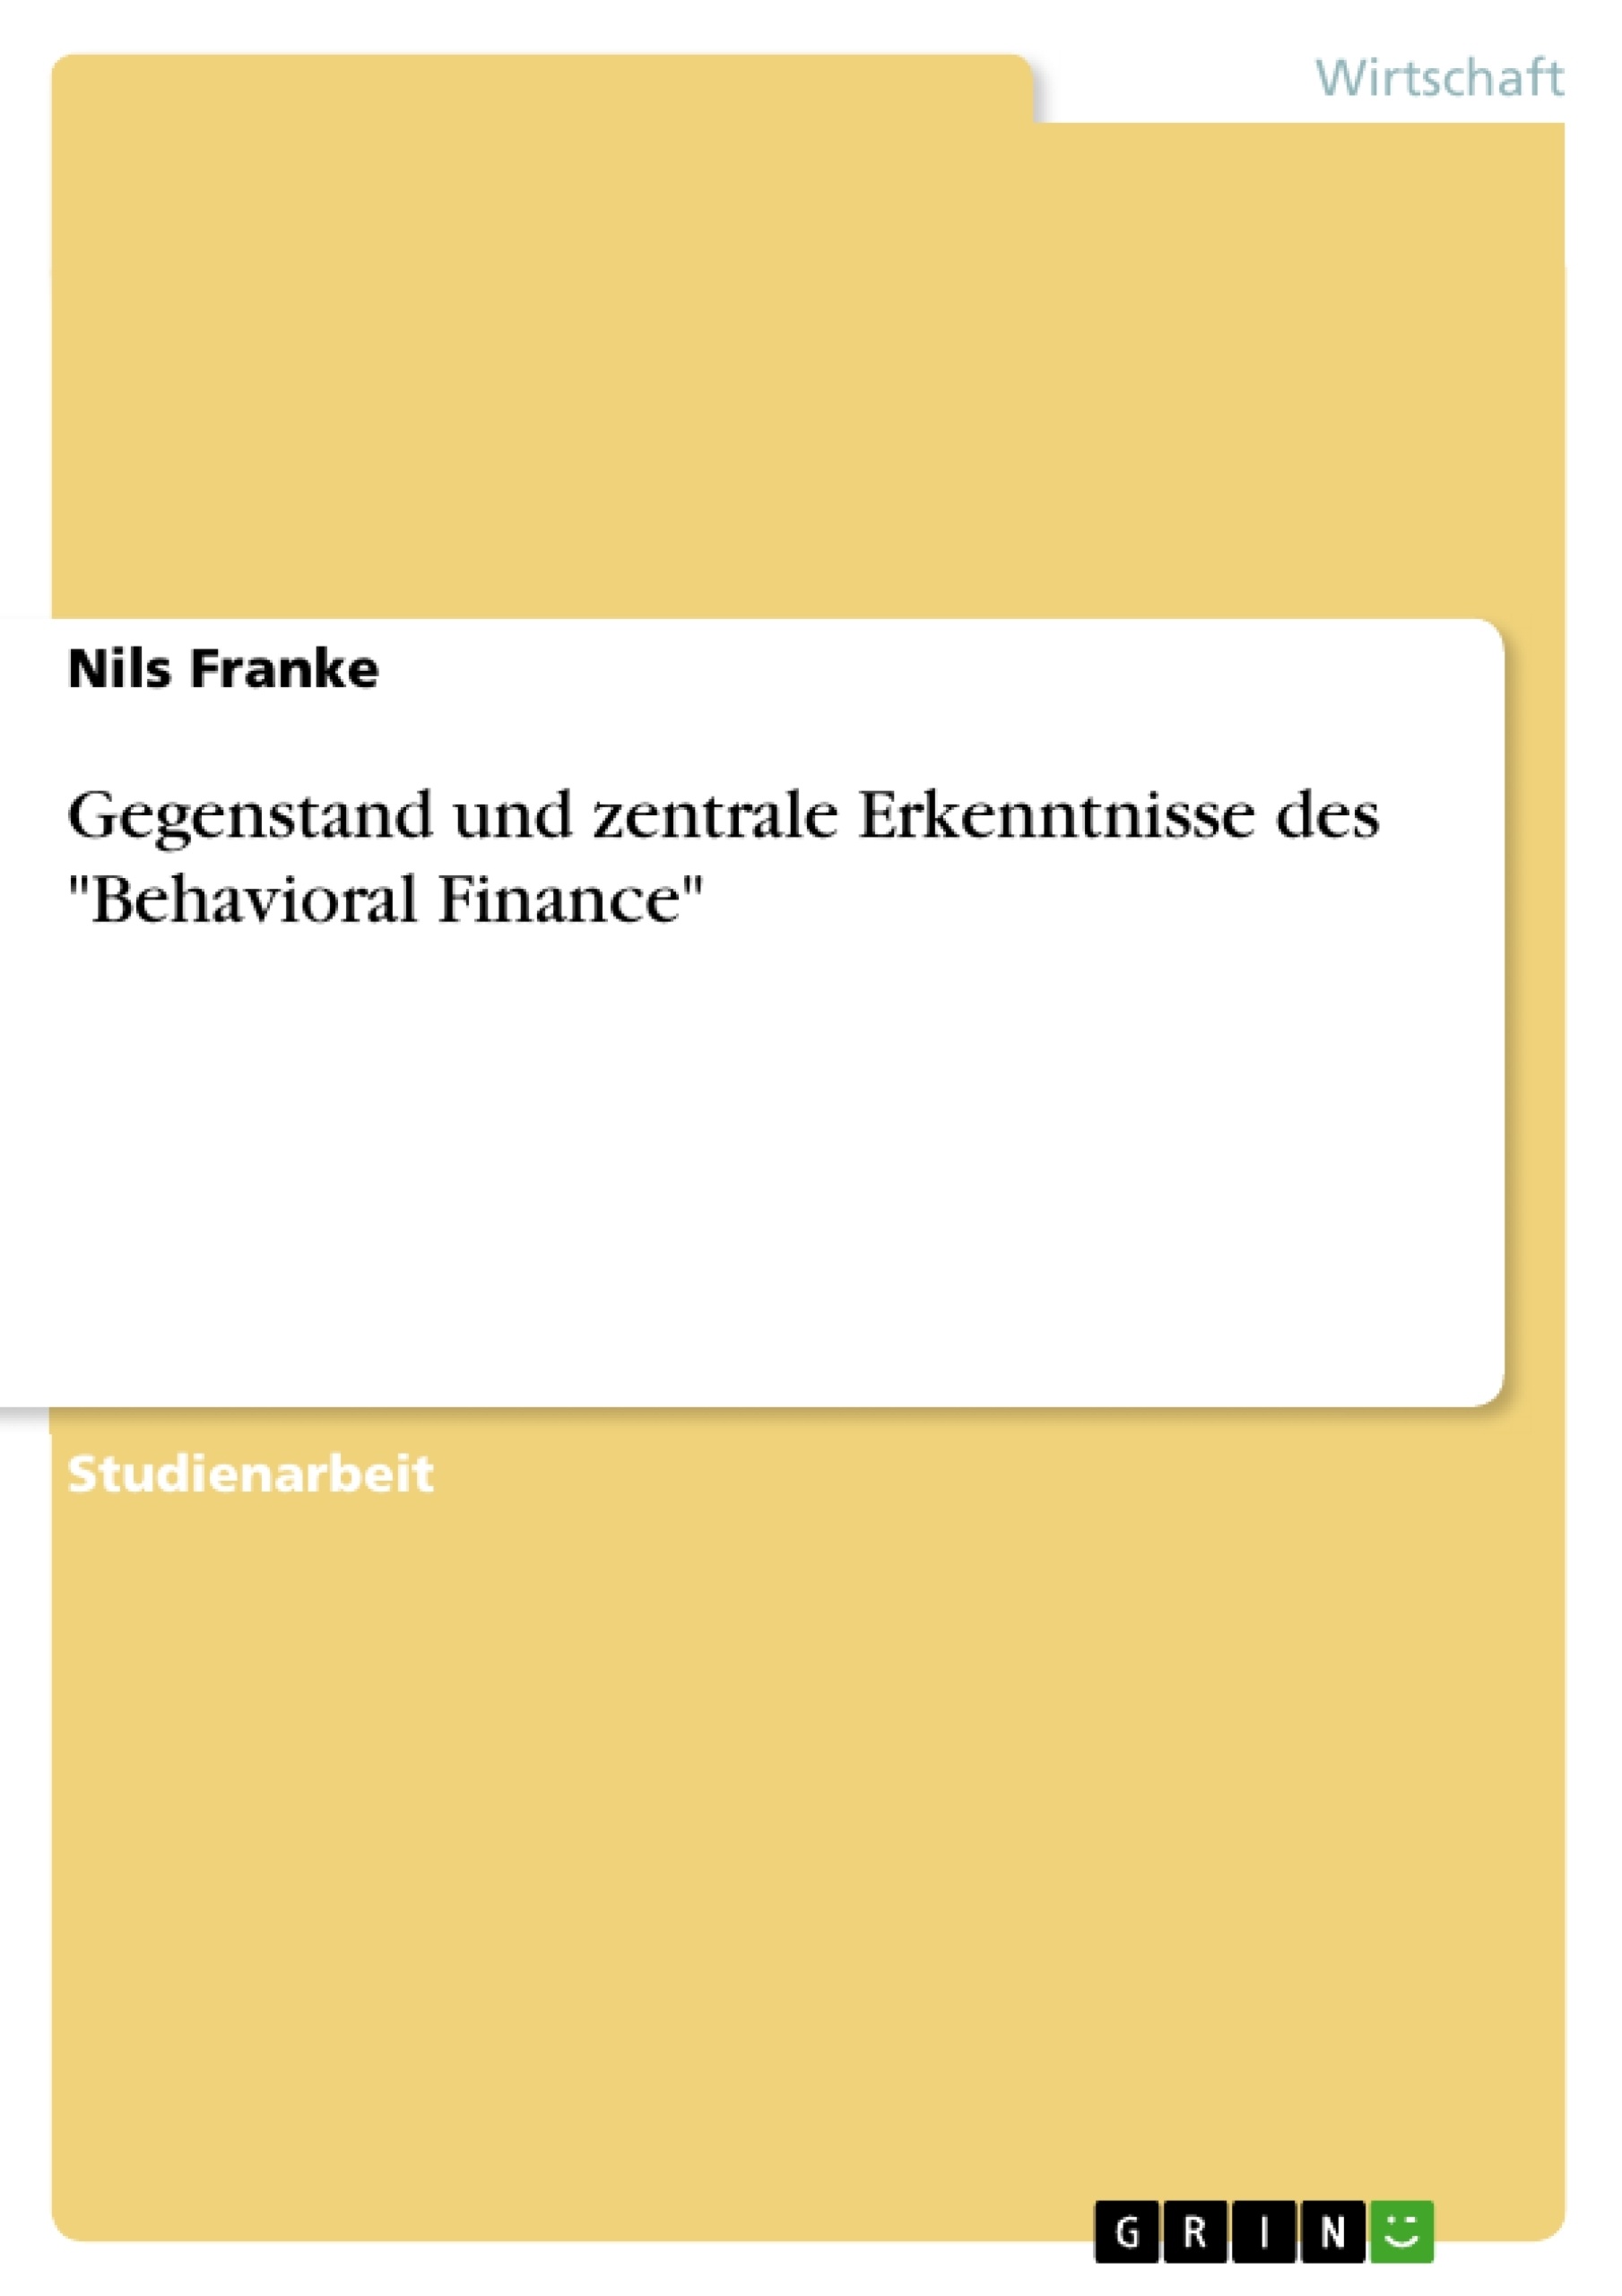 Título: Gegenstand und zentrale Erkenntnisse des "Behavioral Finance"